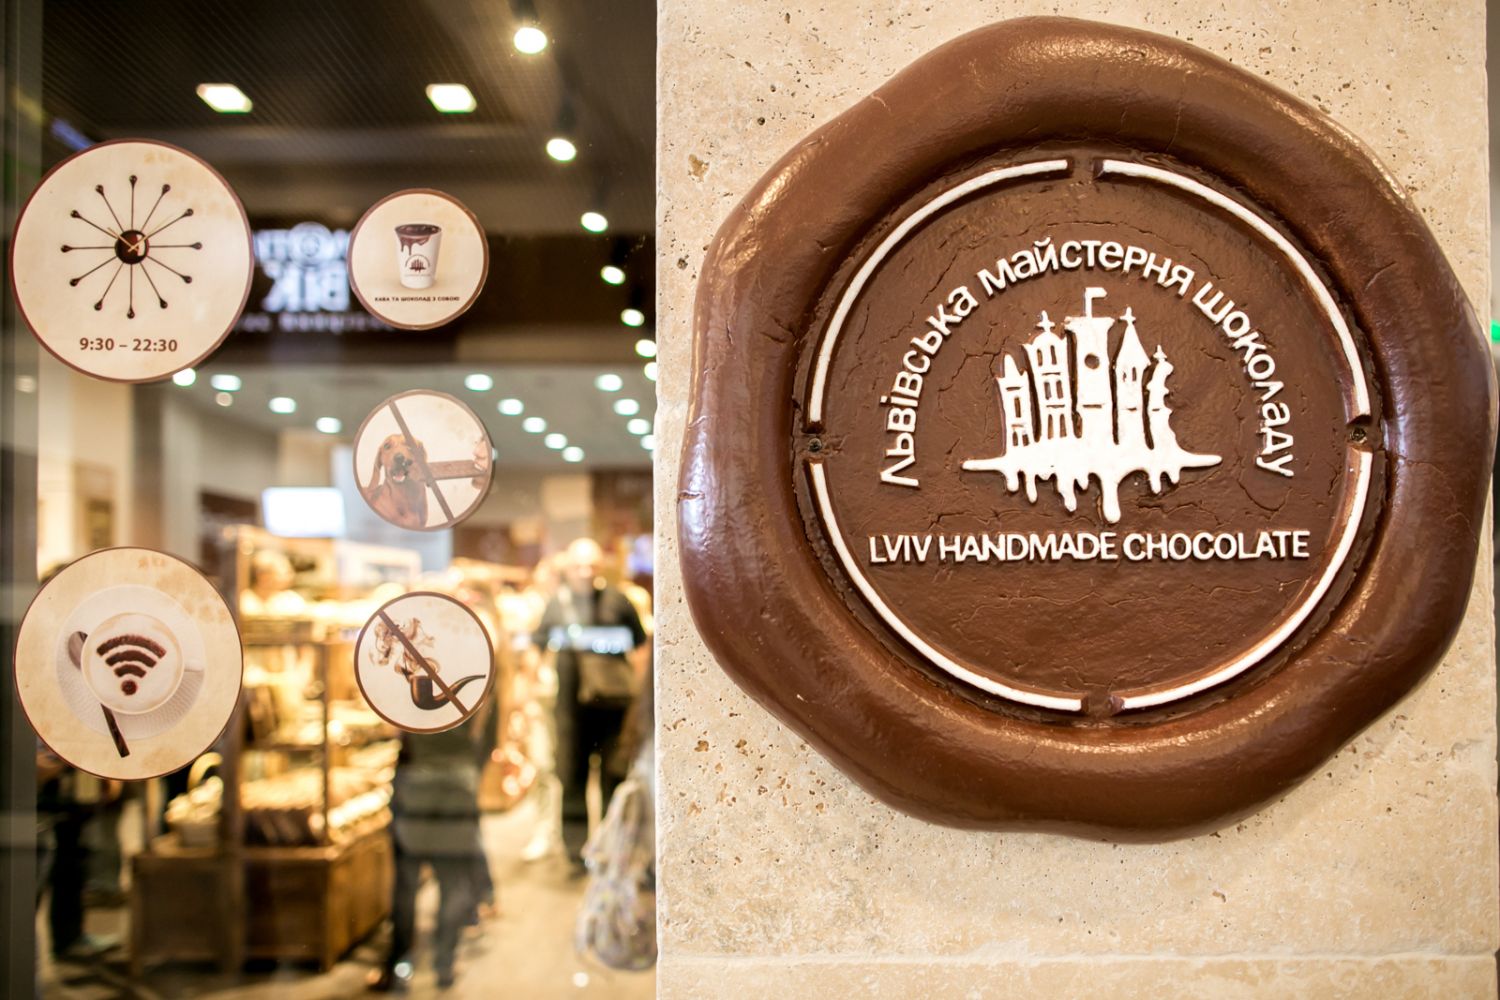 Львовская мастерская шоколада за помещение в центре города платит 1 гривну